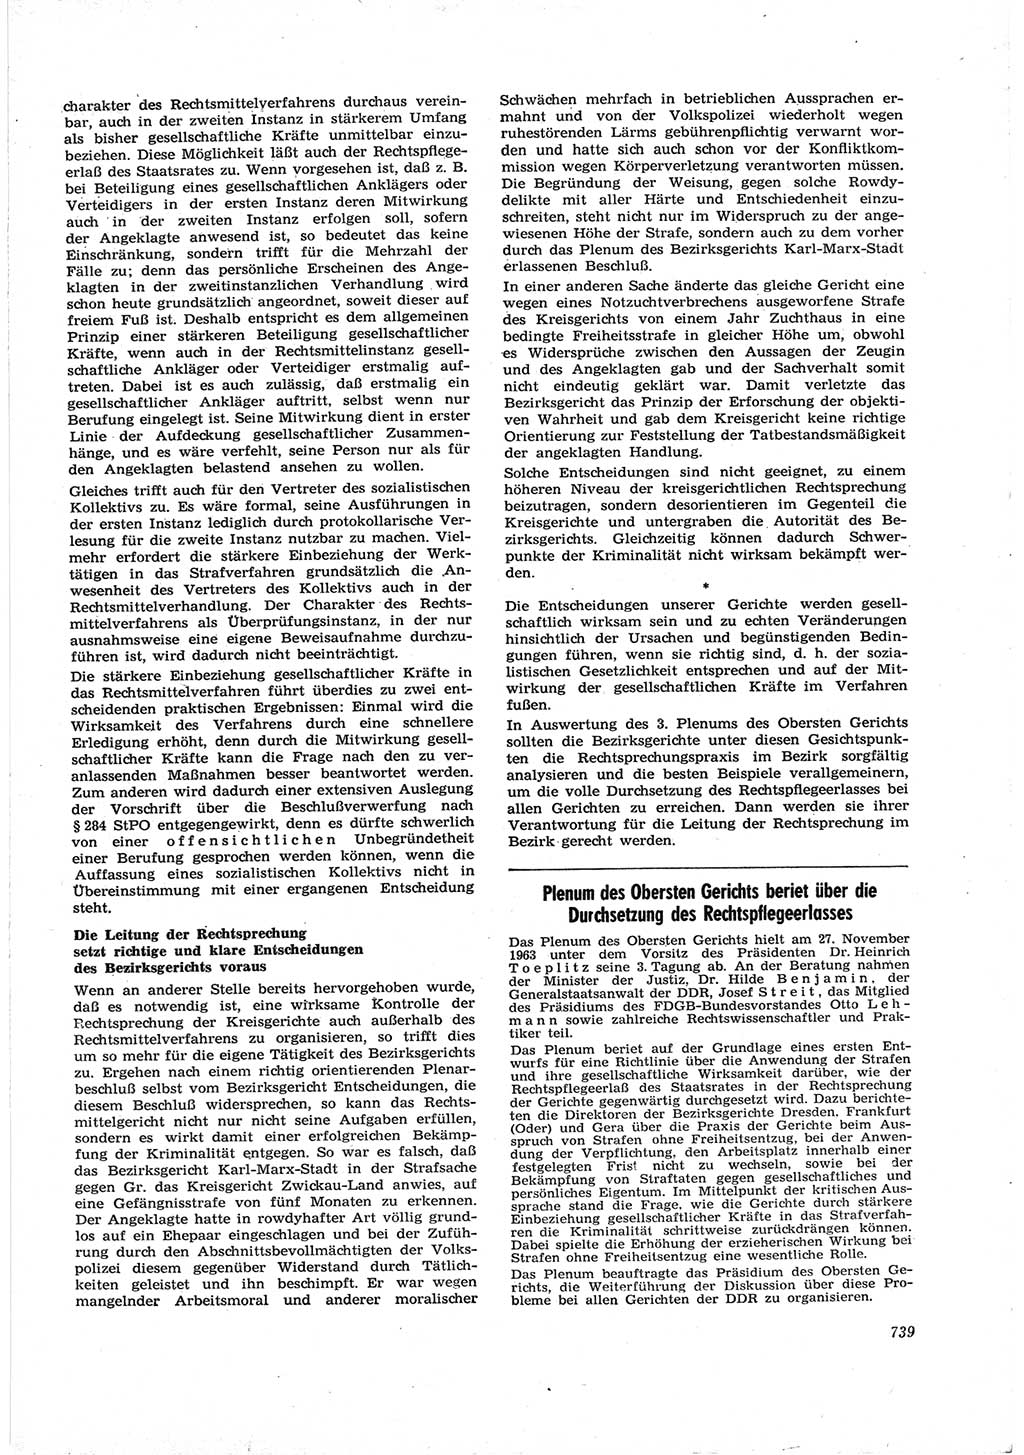 Neue Justiz (NJ), Zeitschrift für Recht und Rechtswissenschaft [Deutsche Demokratische Republik (DDR)], 17. Jahrgang 1963, Seite 739 (NJ DDR 1963, S. 739)